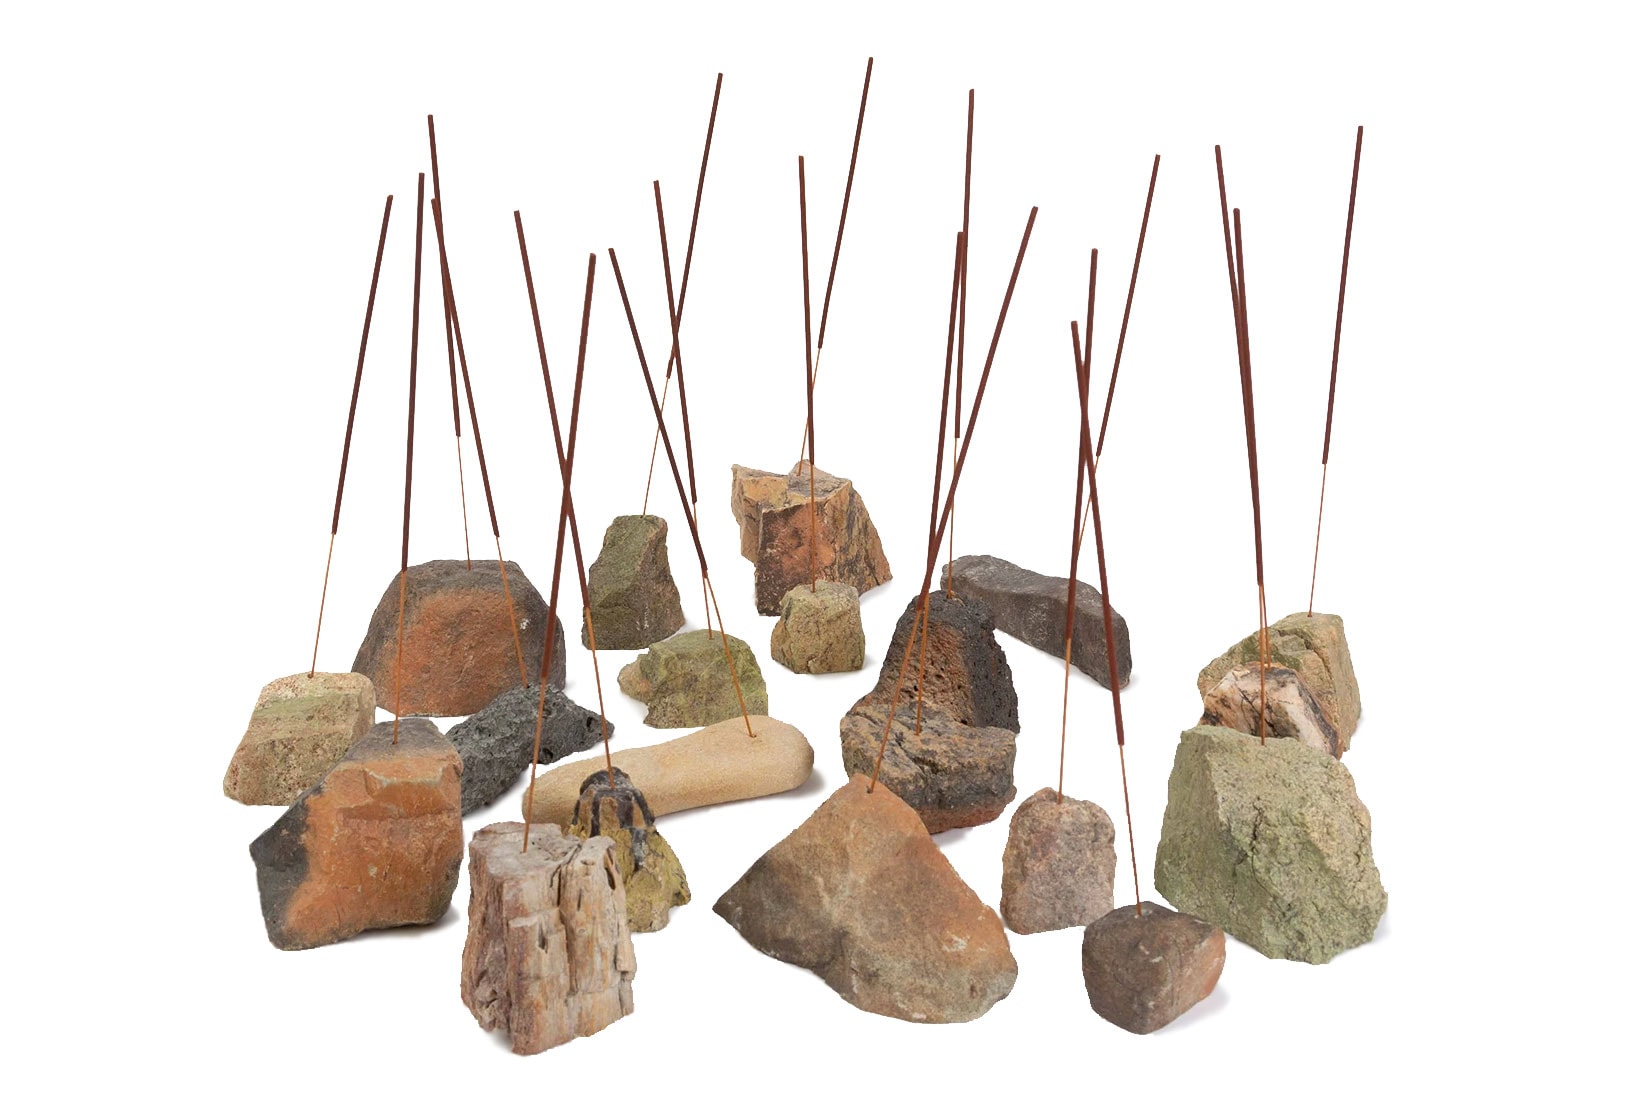 f miller jam earth incense burner holder home decor collection rocks